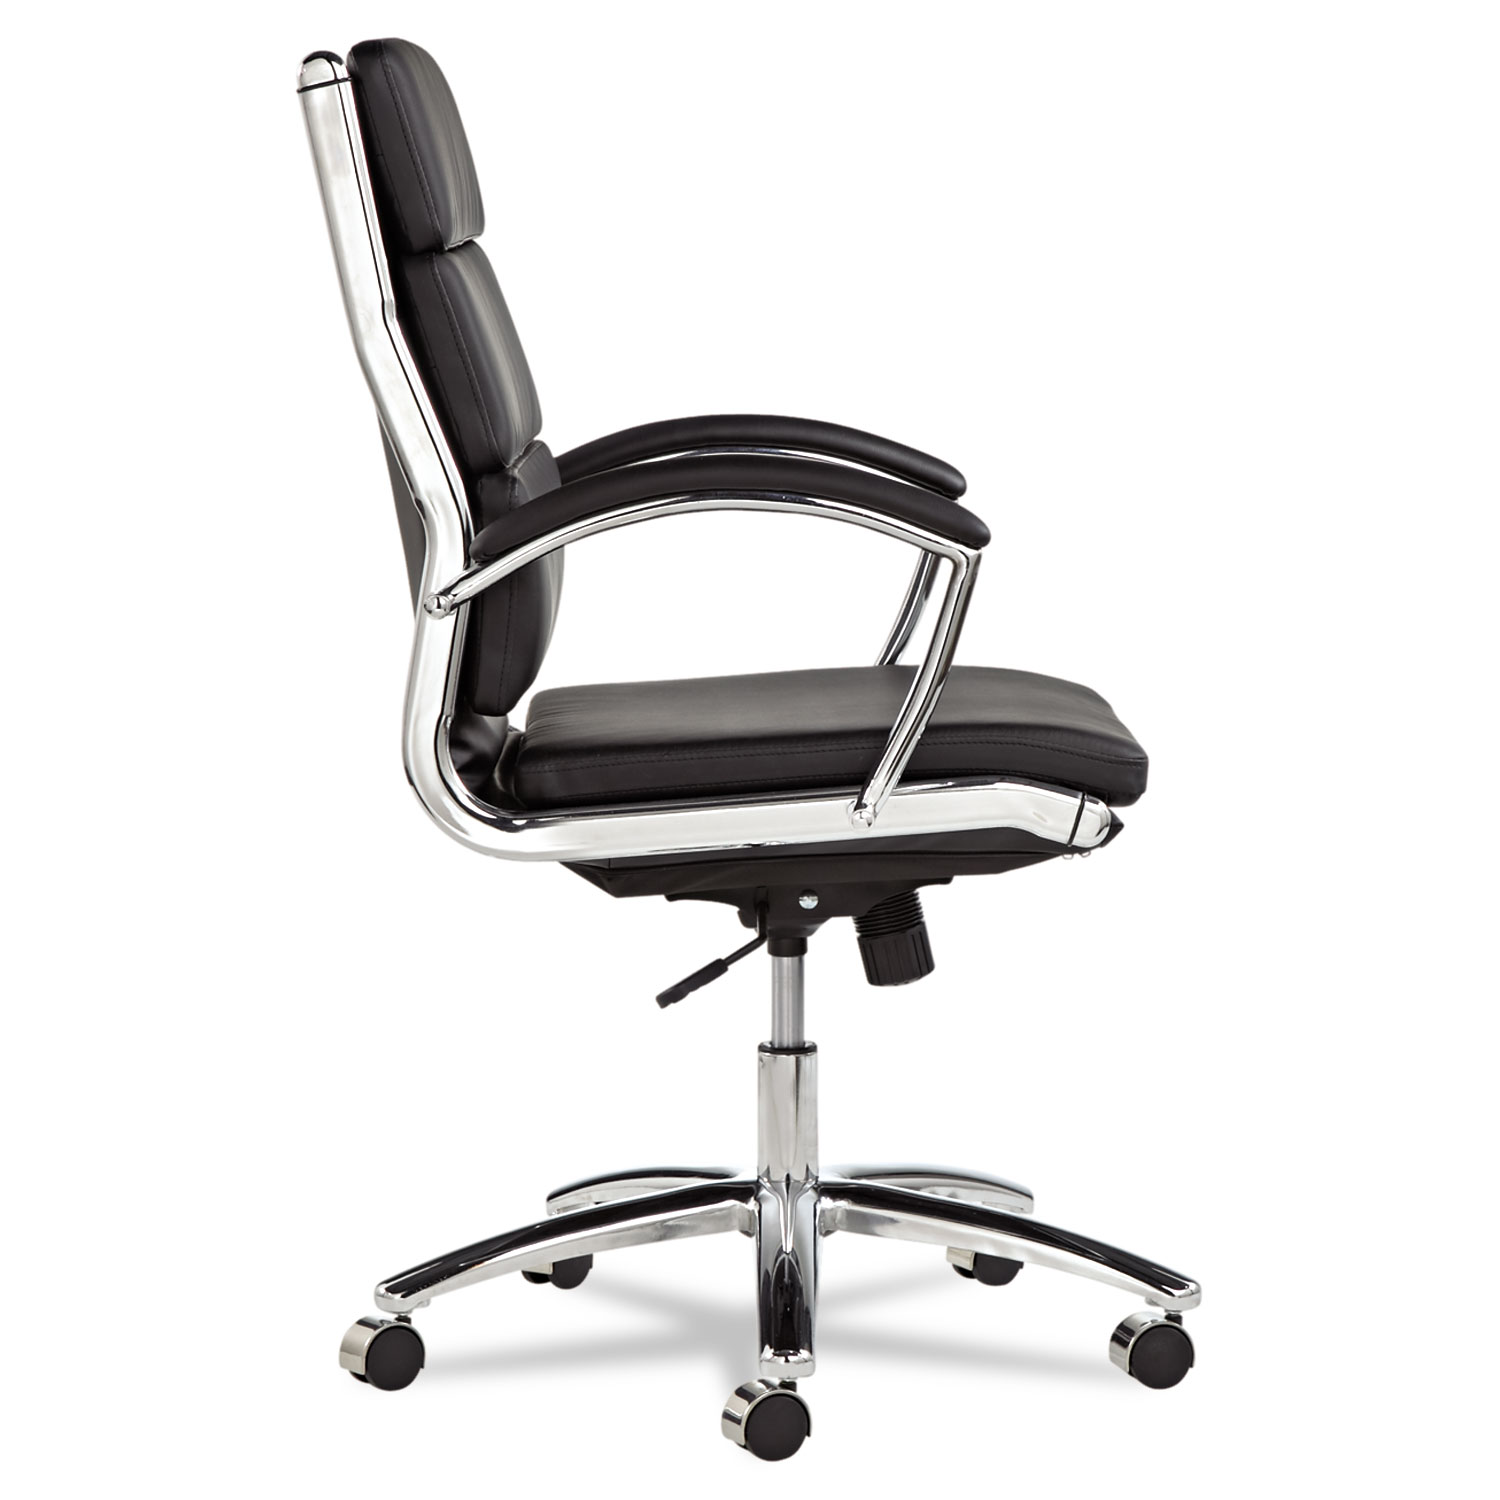 Alera Neratoli Series Mid-Back Swivel/Tilt Chair, Black Leather, Chrome Frame